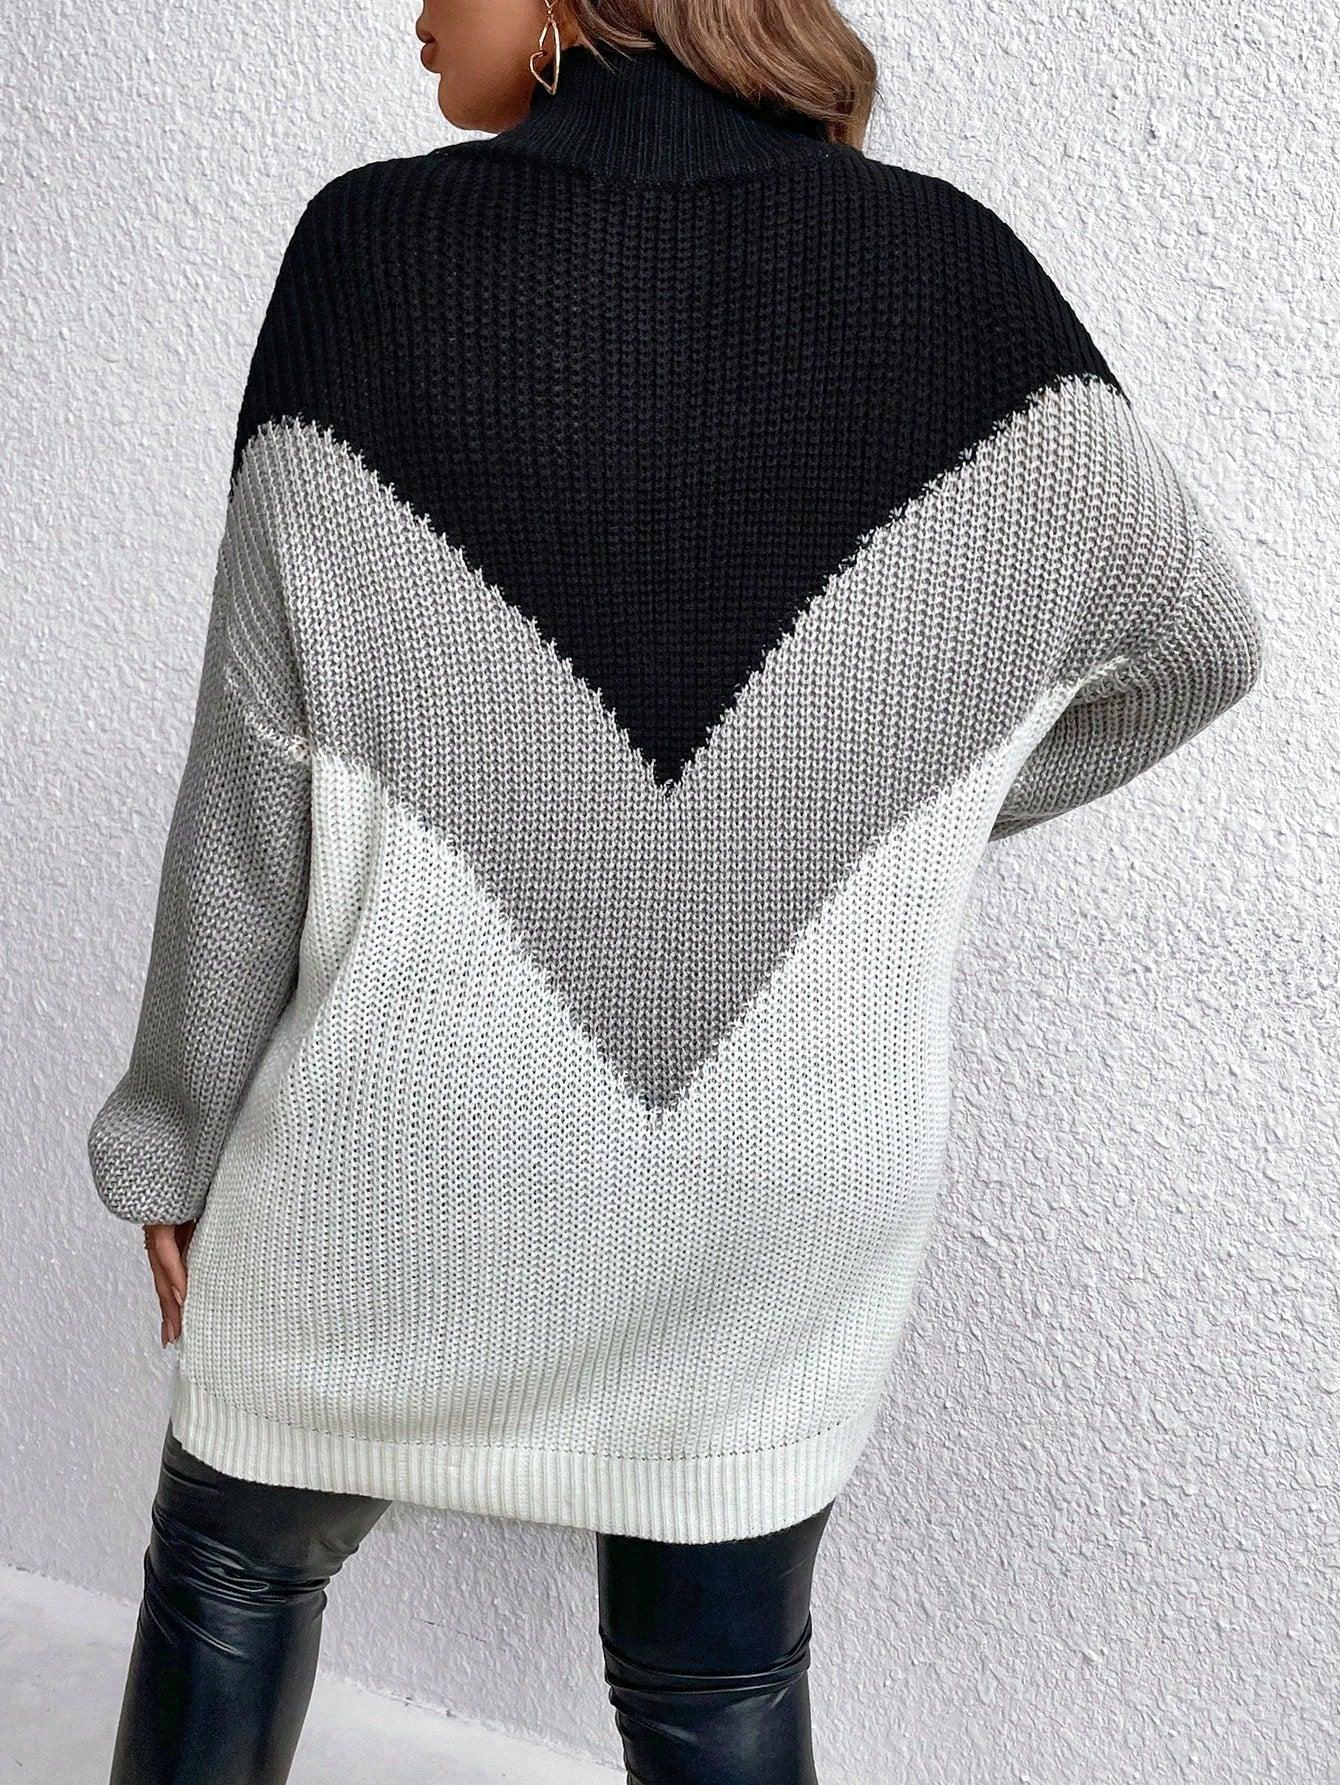 luźny długi sweter kontrast